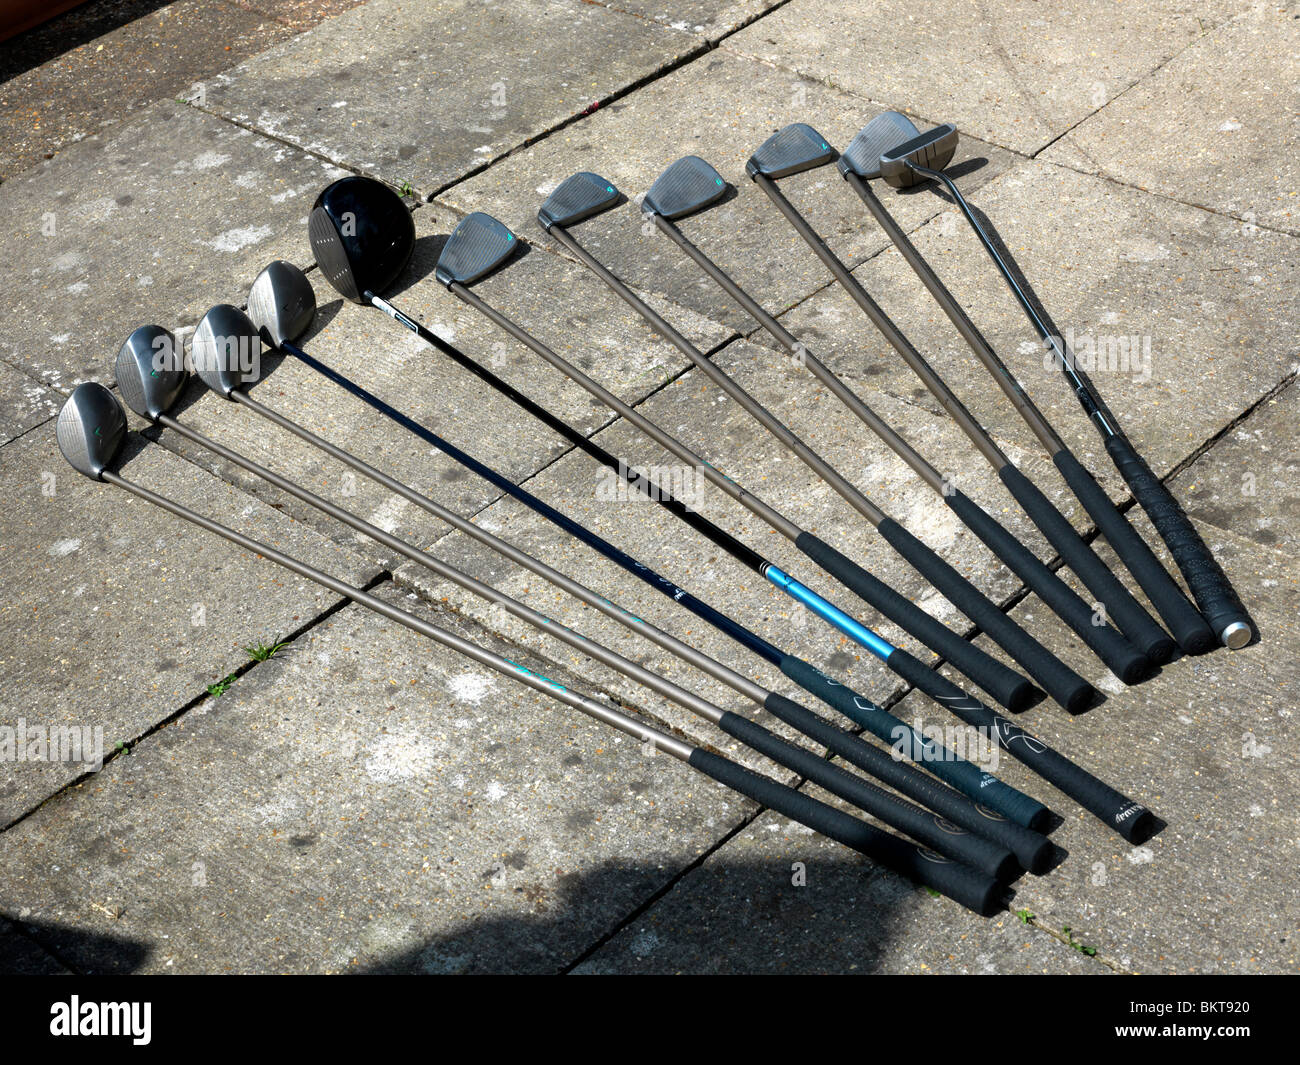 Un juego completo de palos de golf Foto de stock